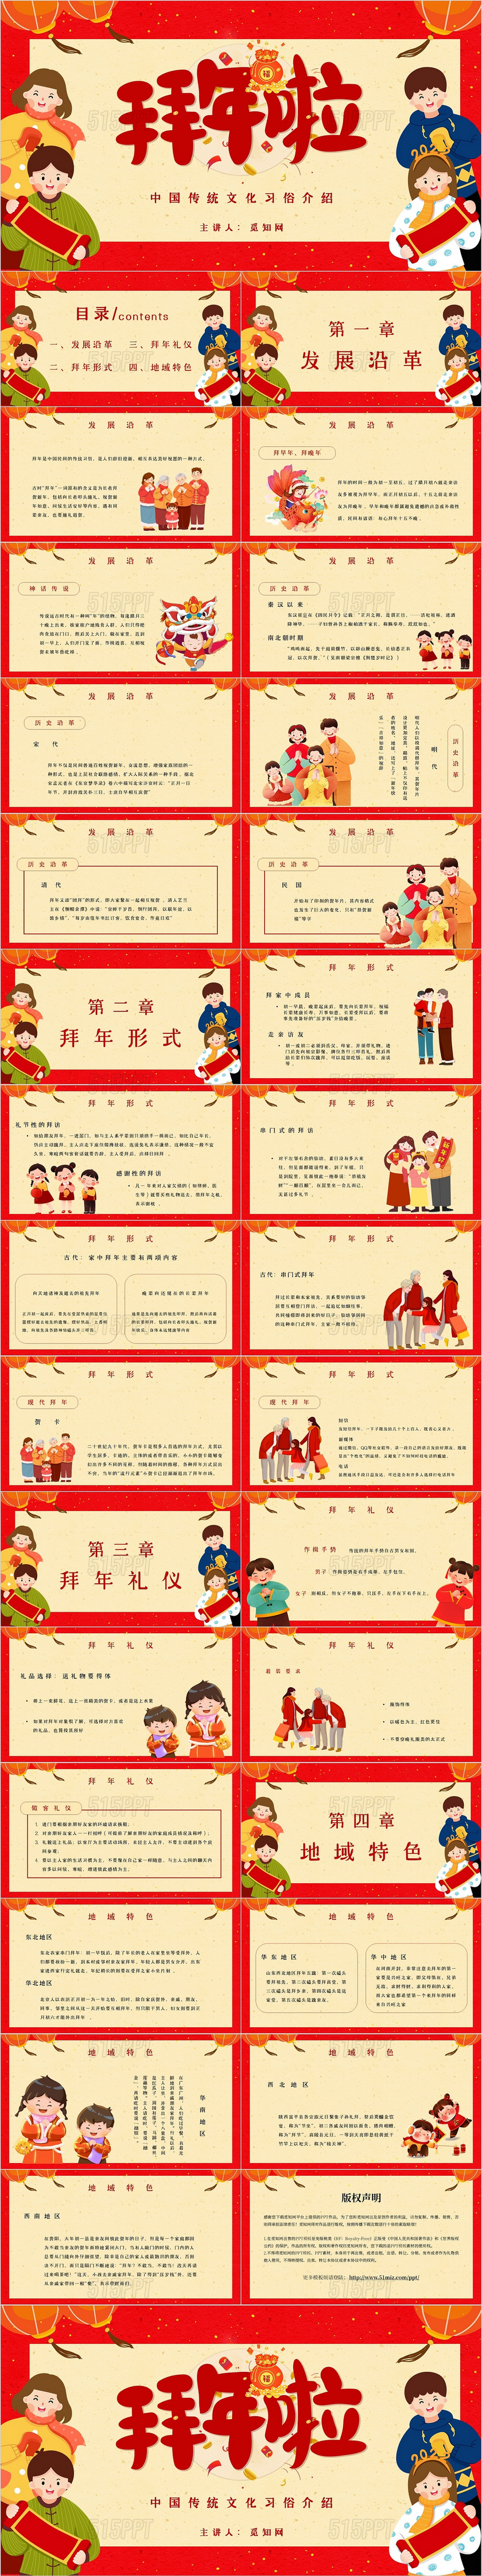 彩色卡通手绘扁平风插画中国传统文化习俗介绍拜年主题PPT模板春节